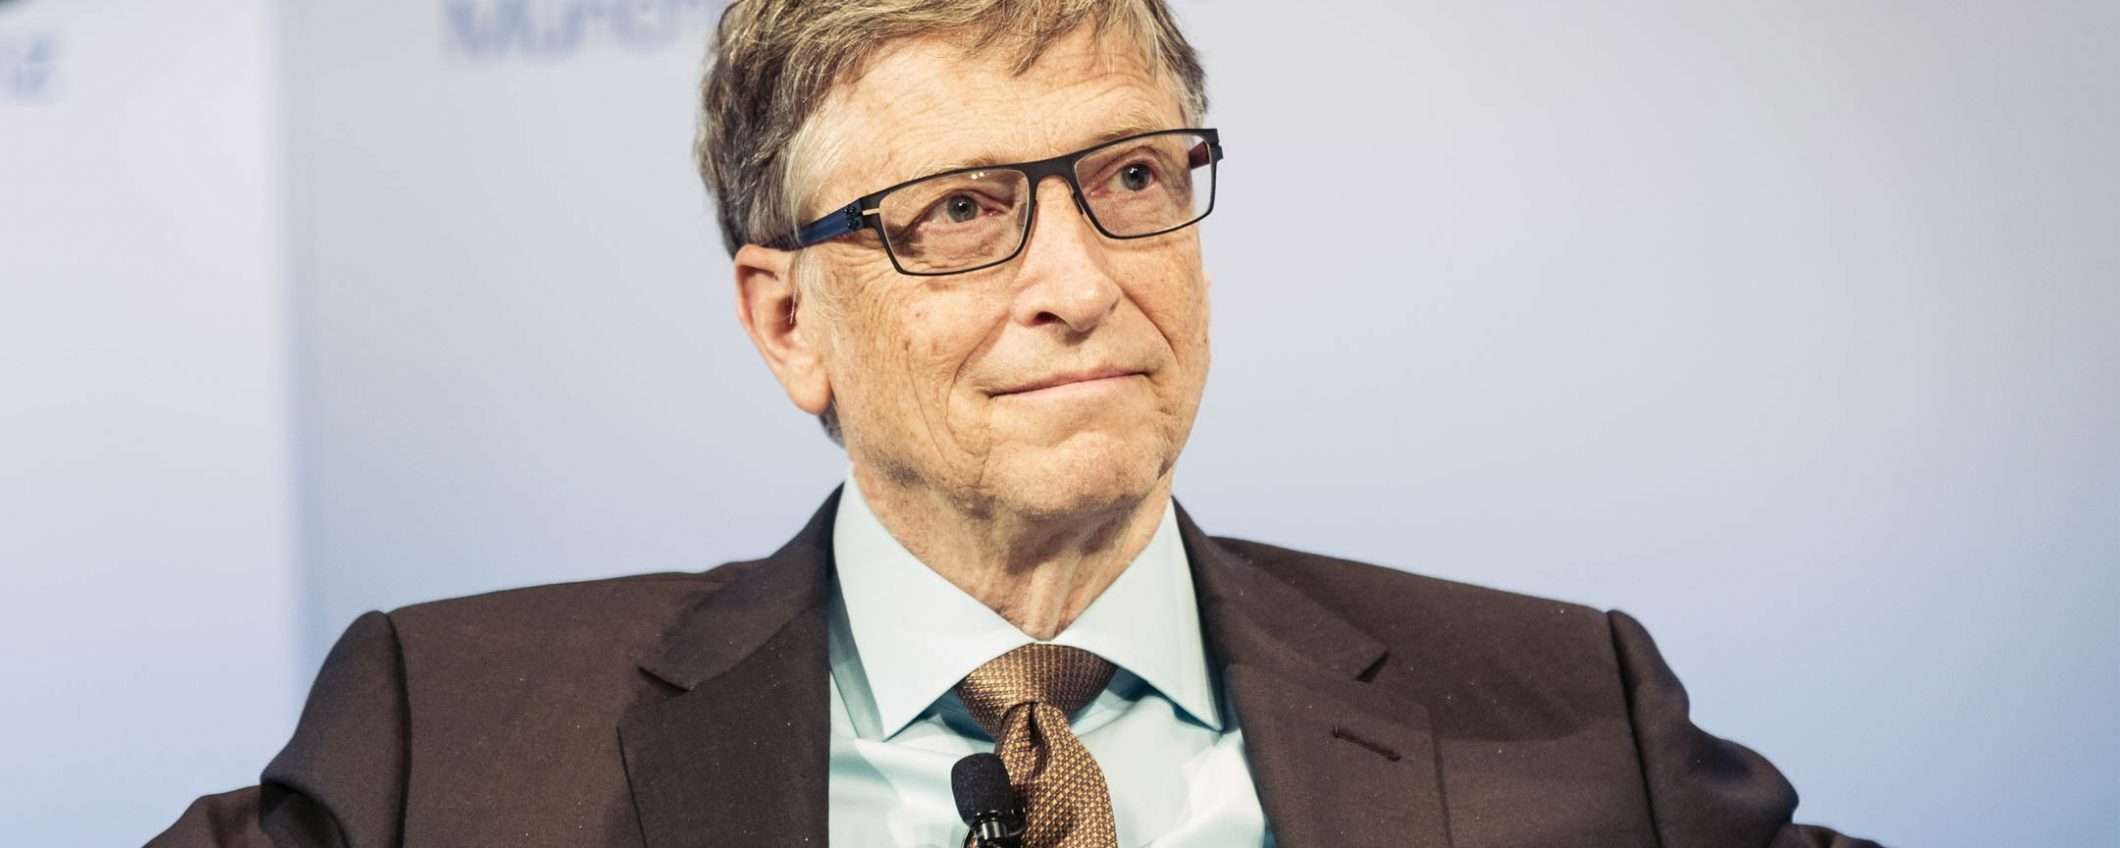 Il parere di Bill Gates su Bitcoin e criptovalute